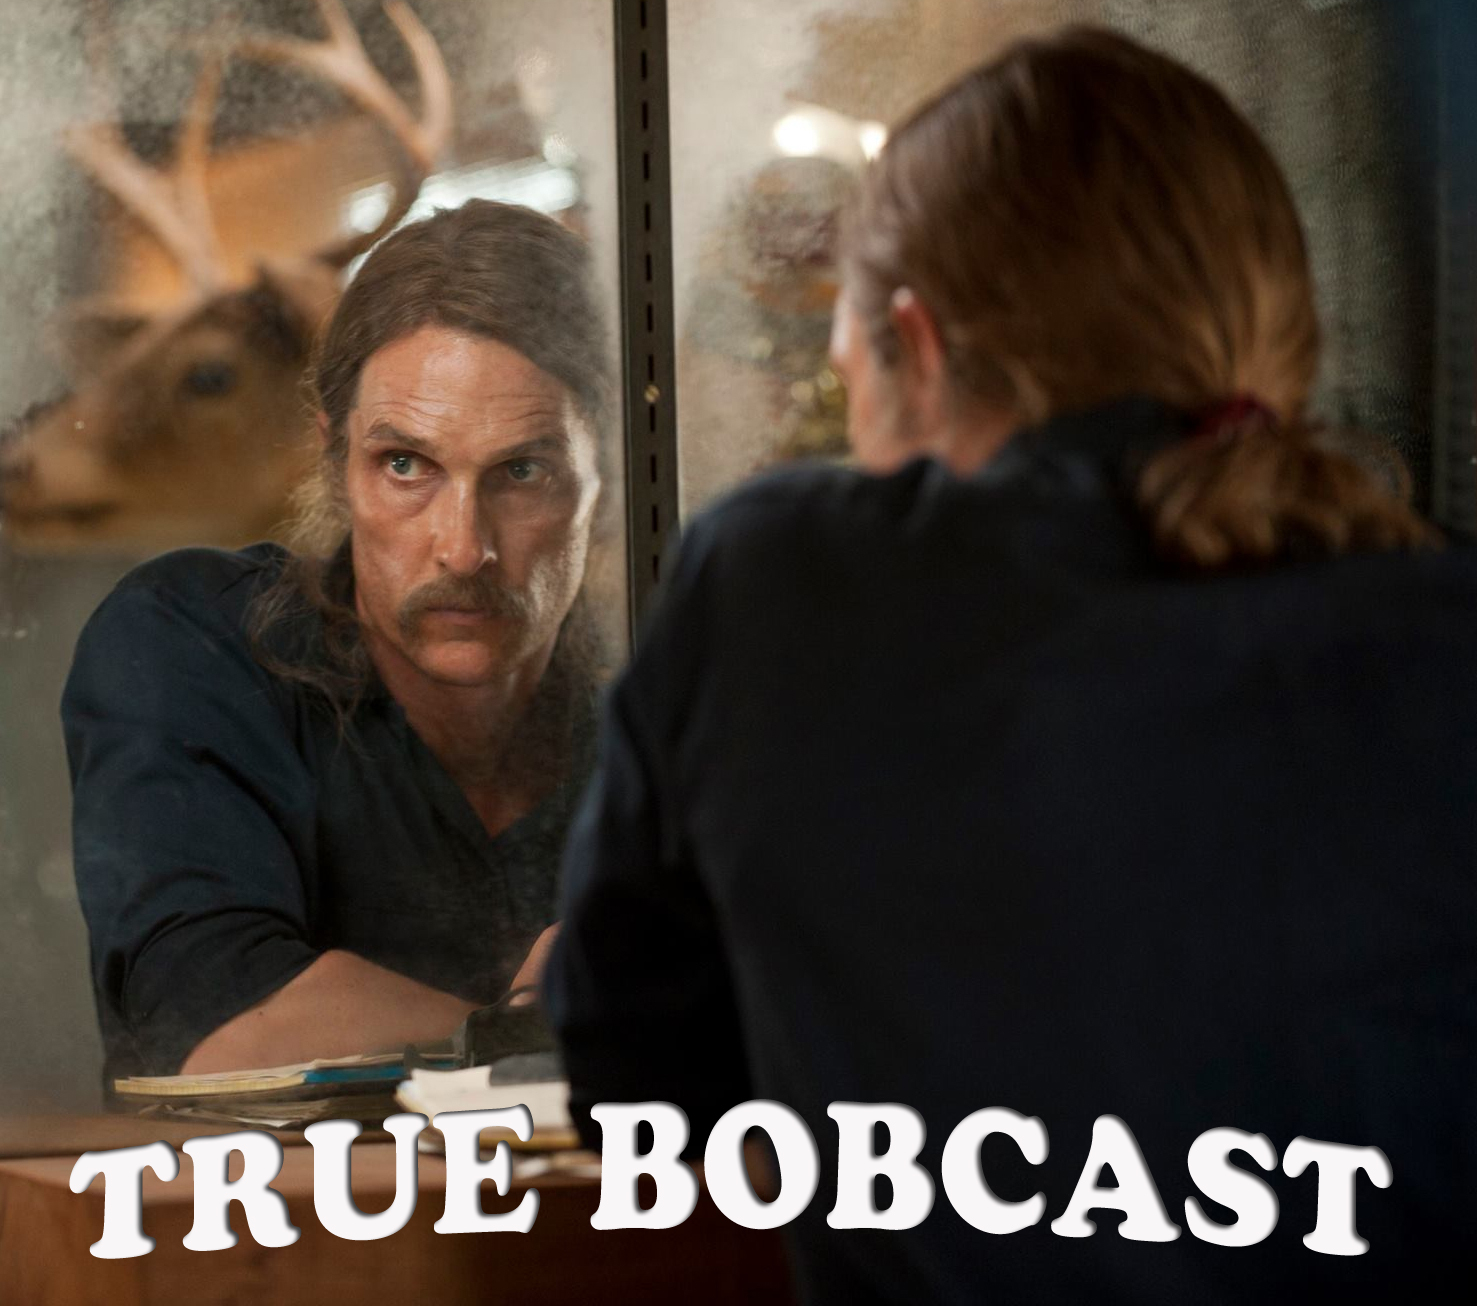 Bobcast 26 -- TRUE BOBCAST (S01 EP07)